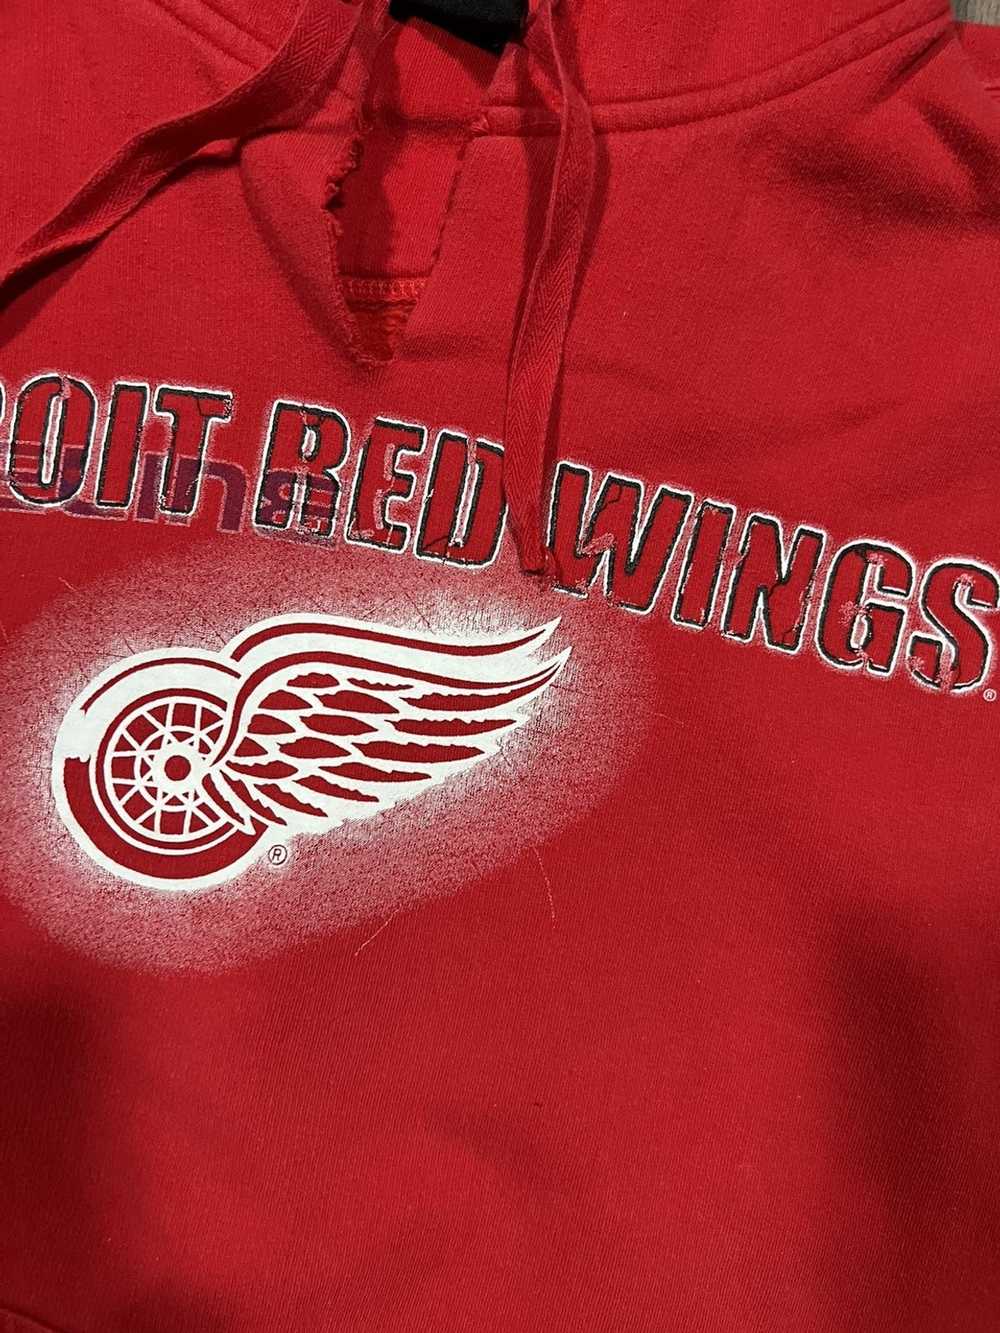 NHL Detroit Red Wings Hoodie - image 7